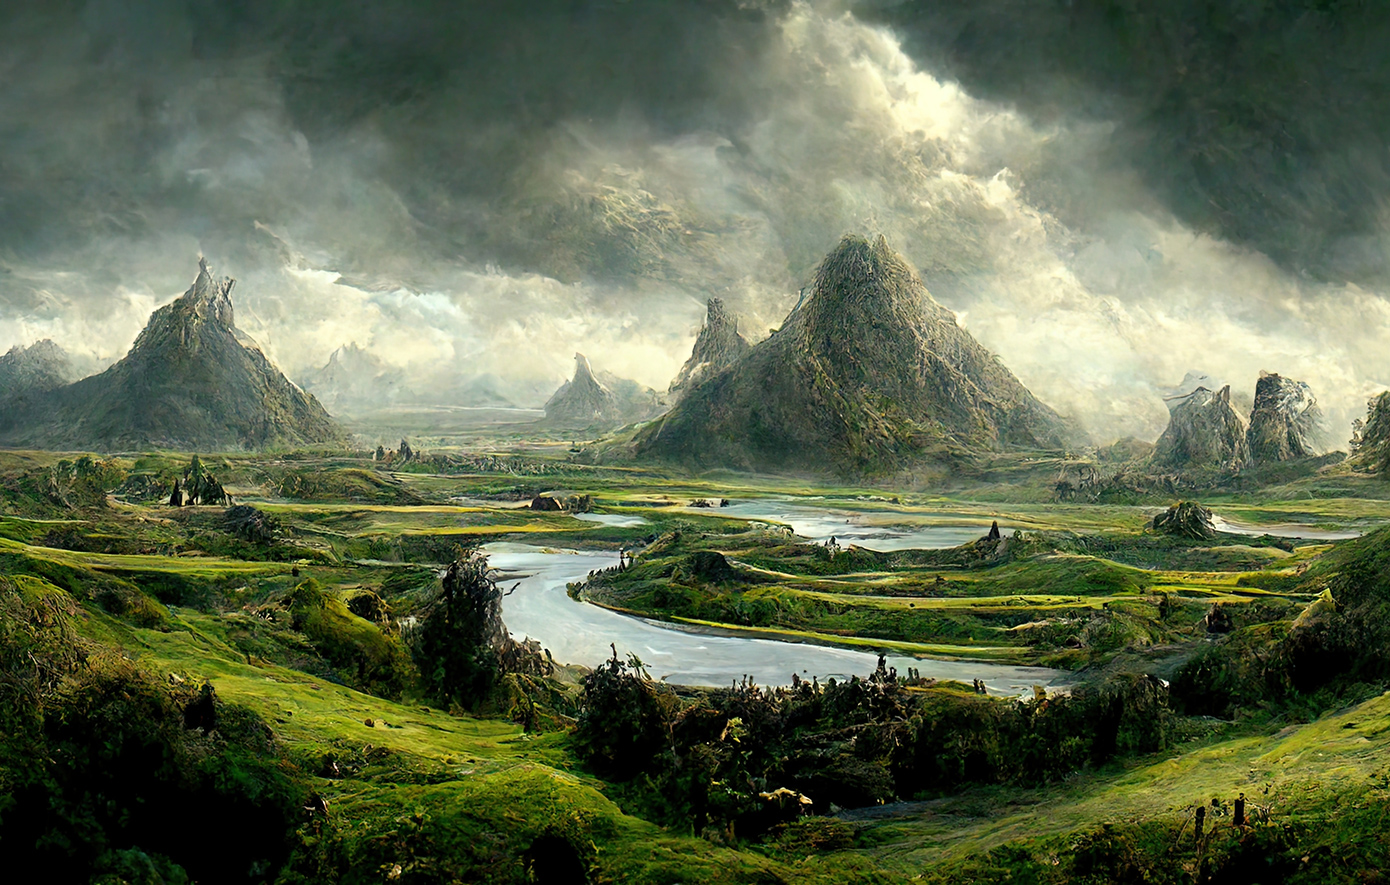 Σκηνές από τα παρασκήνια του Lord of the Rings που ίσως δεν έχετε φανταστεί